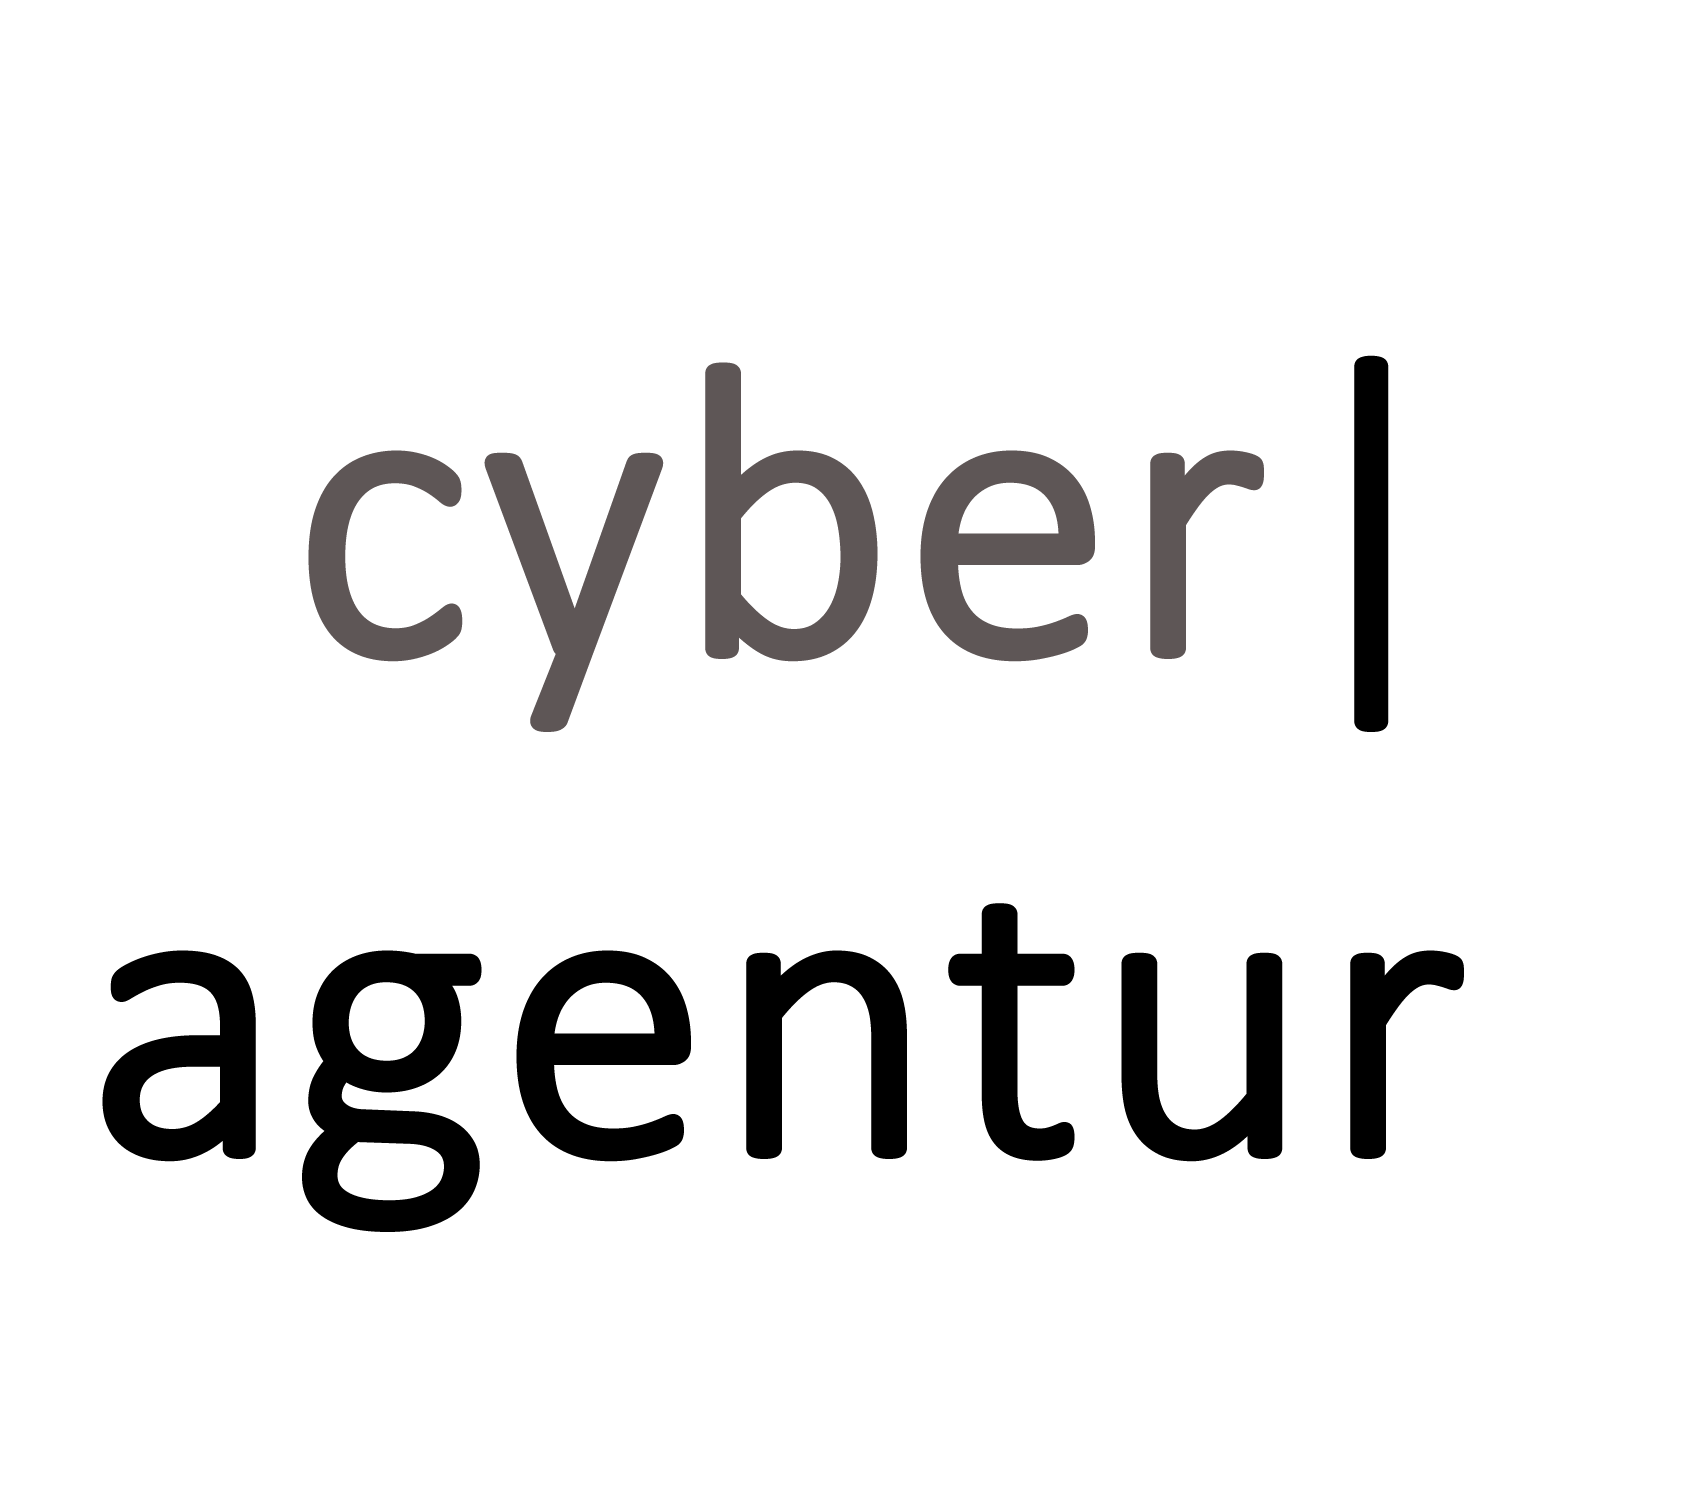 Agentur für Innovation in der Cybersicherheit GmbH